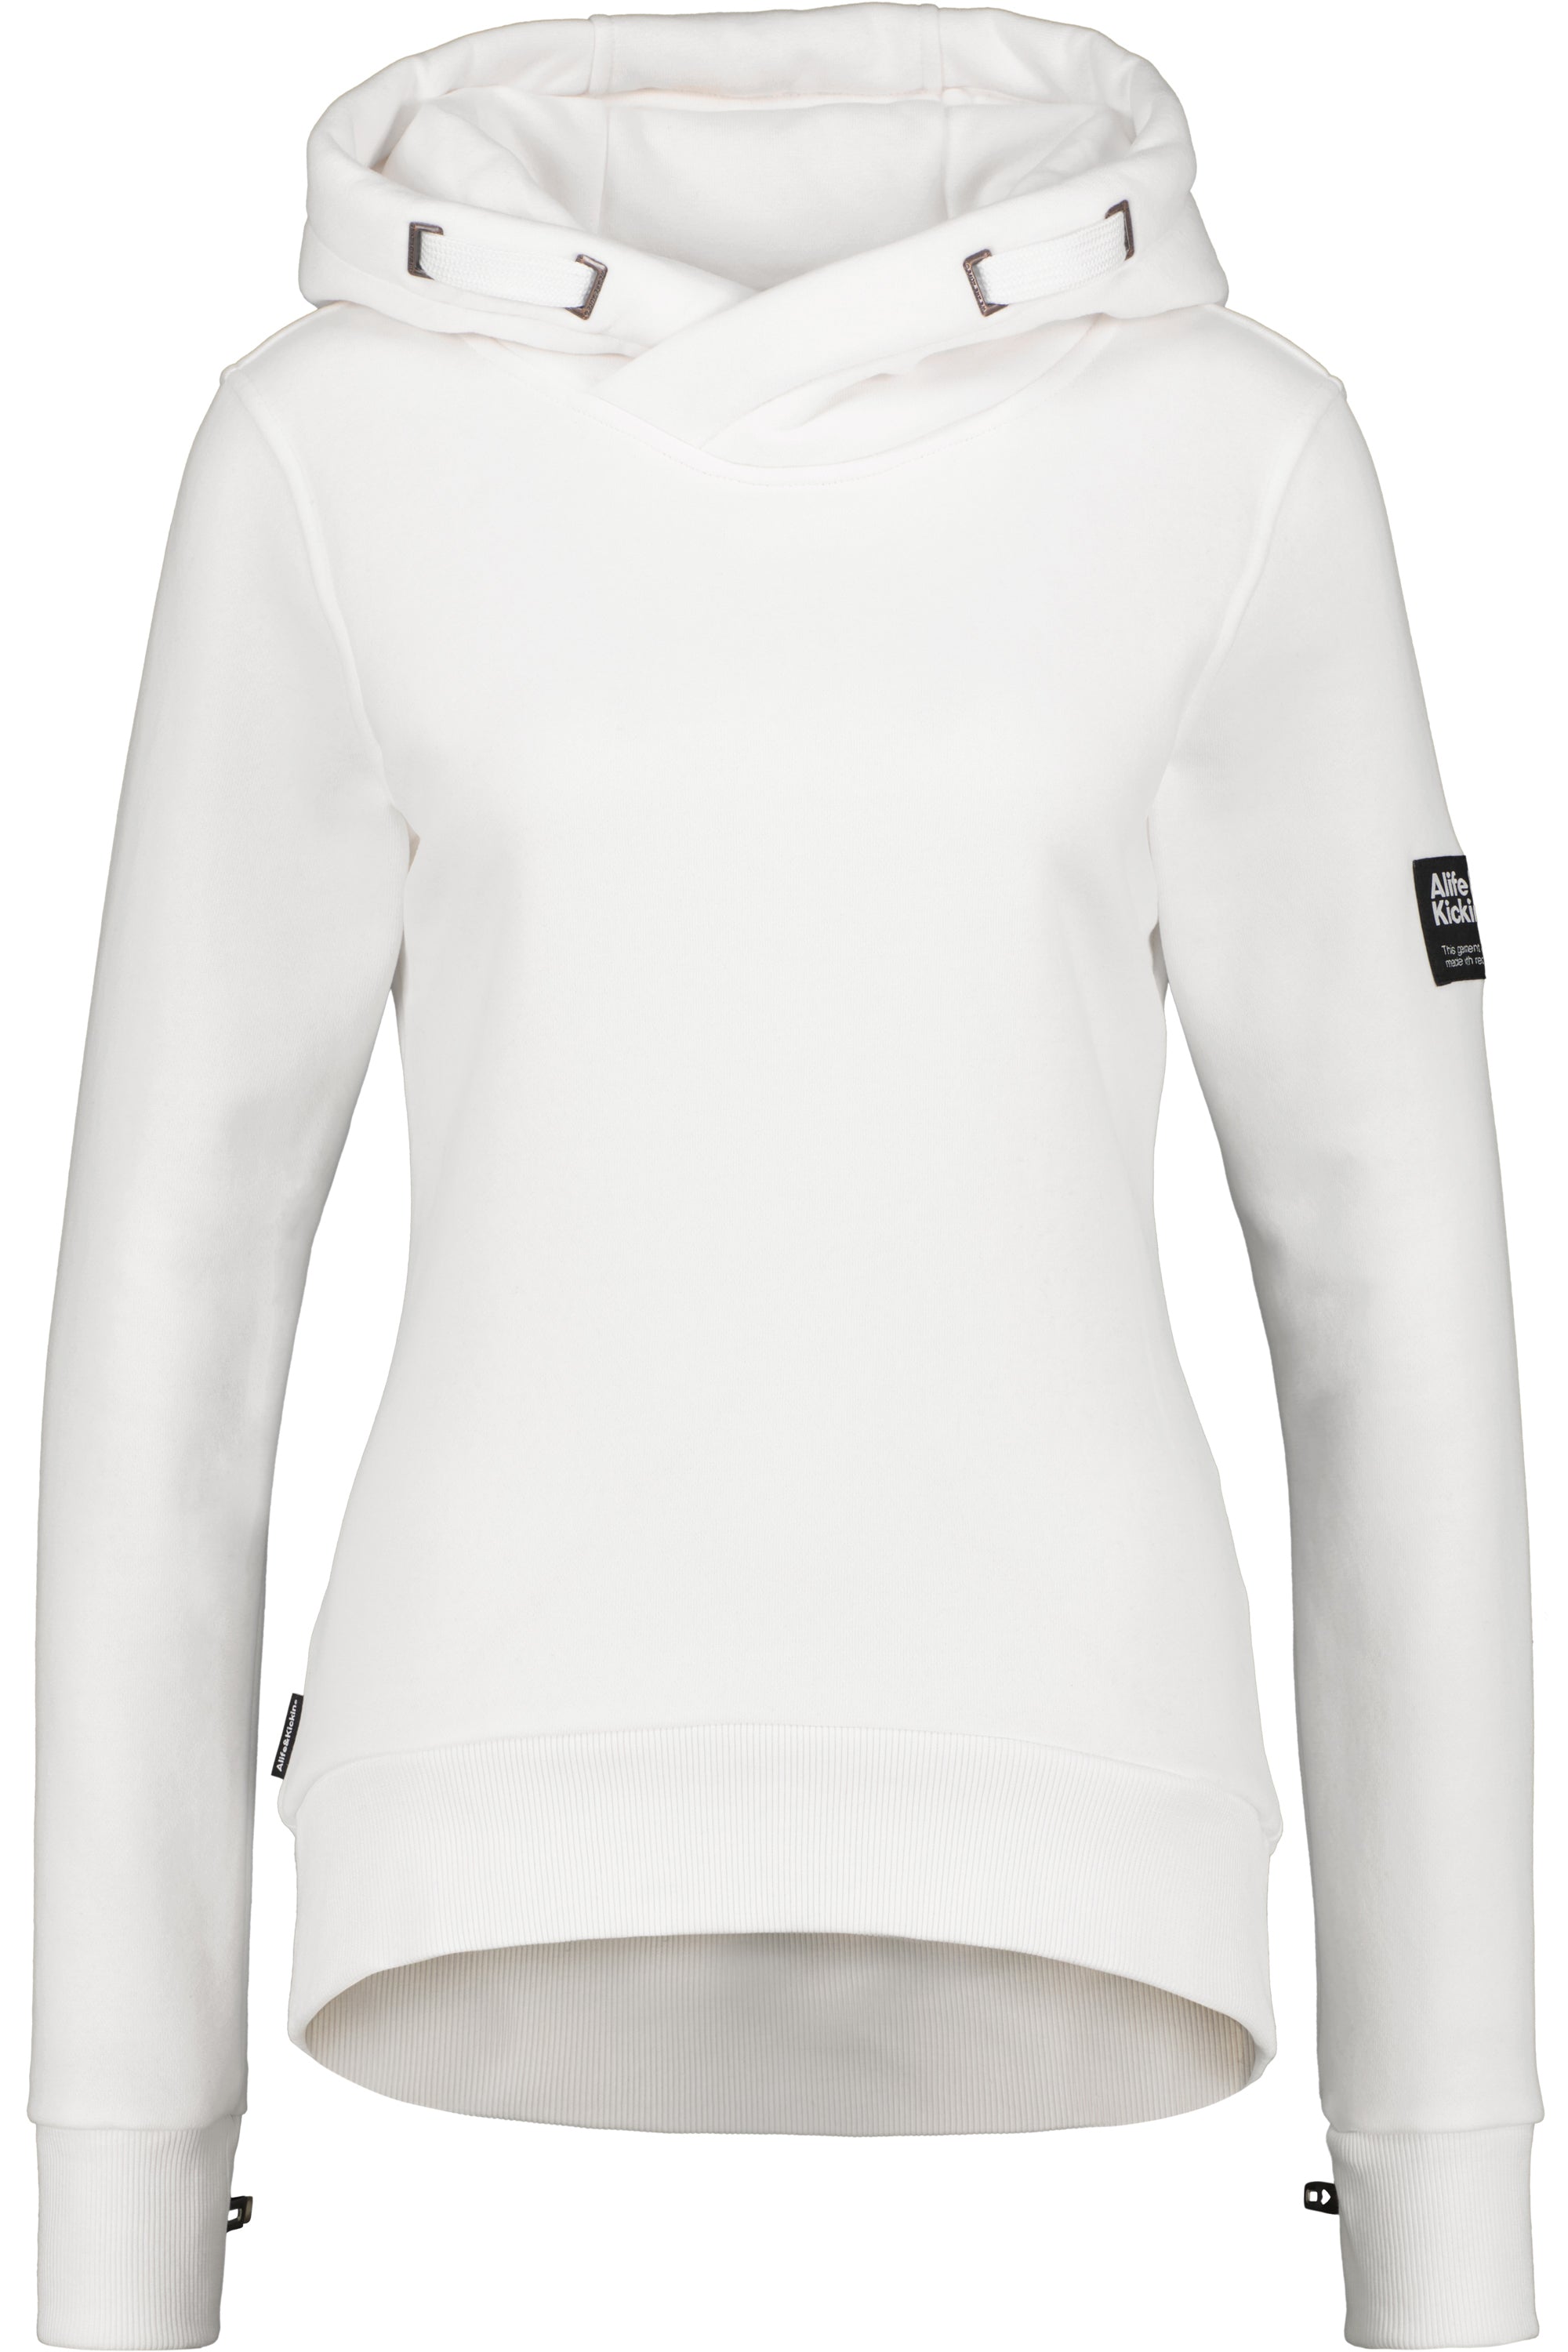 SarinaAK Sweatshirt für Damen - Sportlicher Look und ultimativer Komfort Weiß